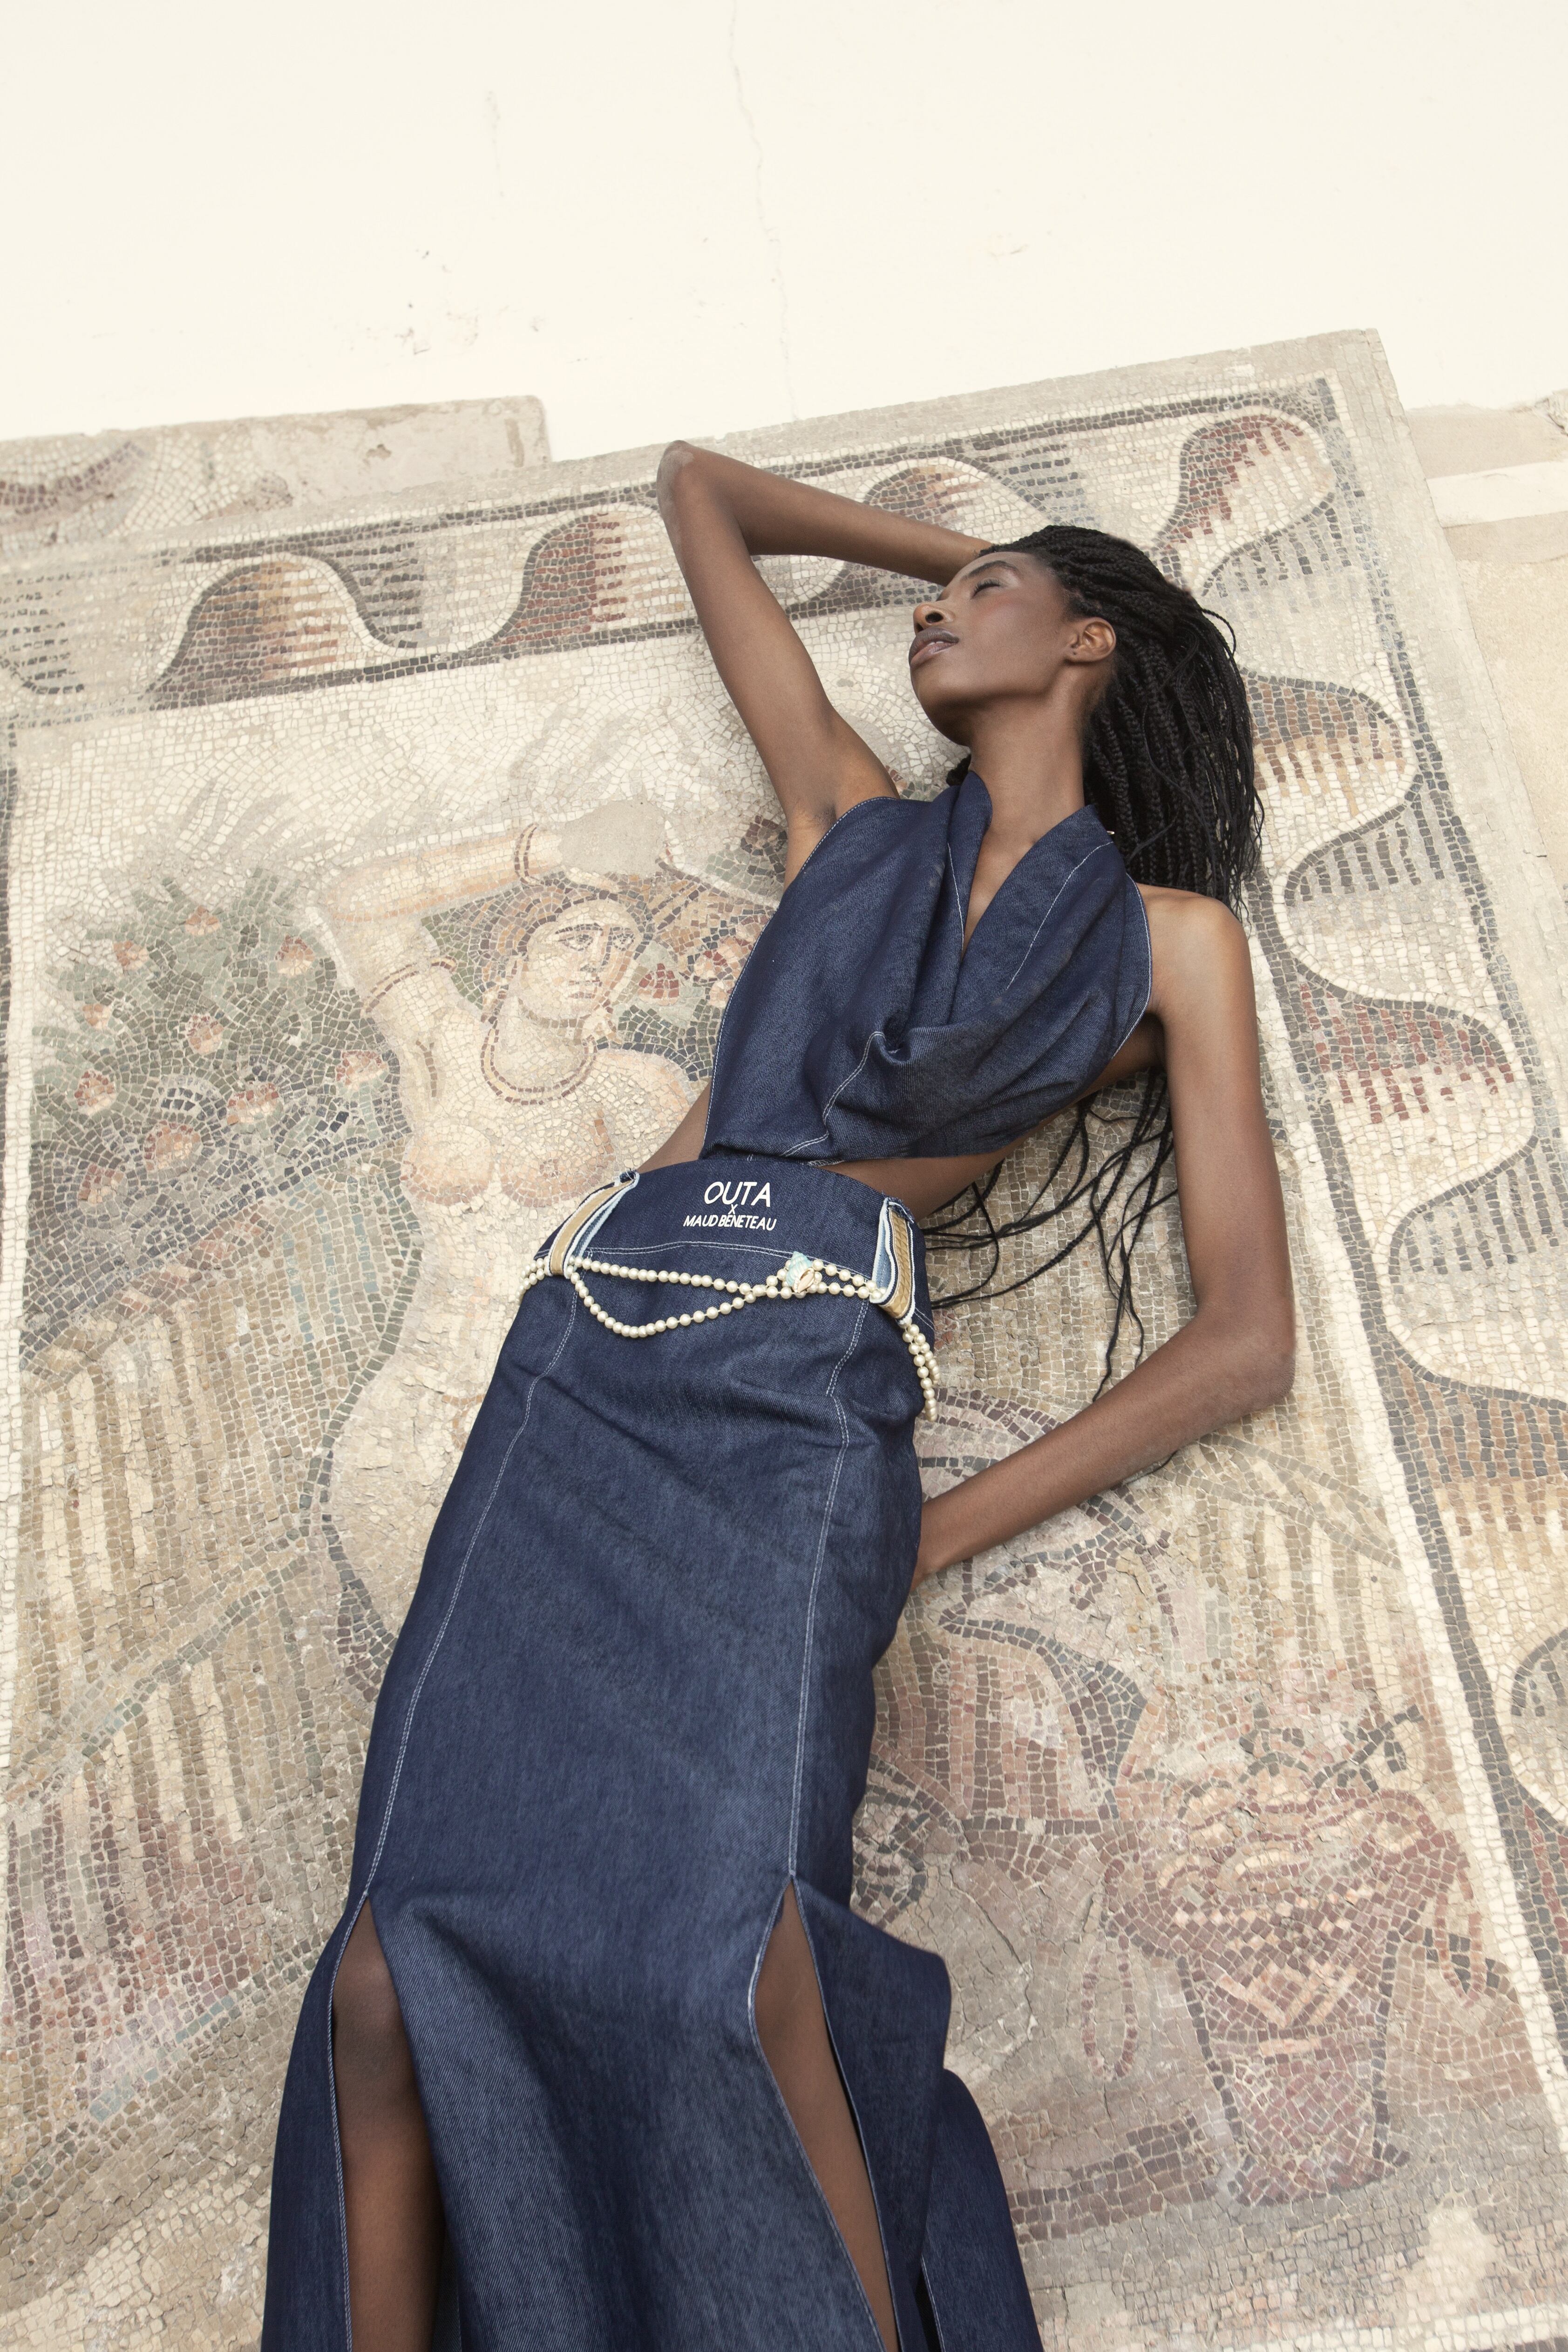 Top y falda en 'denim' de fibra de plástico marino reciclado, de Outa x Maud Beneteau. La foto está hecha junto a los mosaicos romanos que atesora el Museo Nacional de Cartago, en la explanada de la antigua acrópolis fenicia.